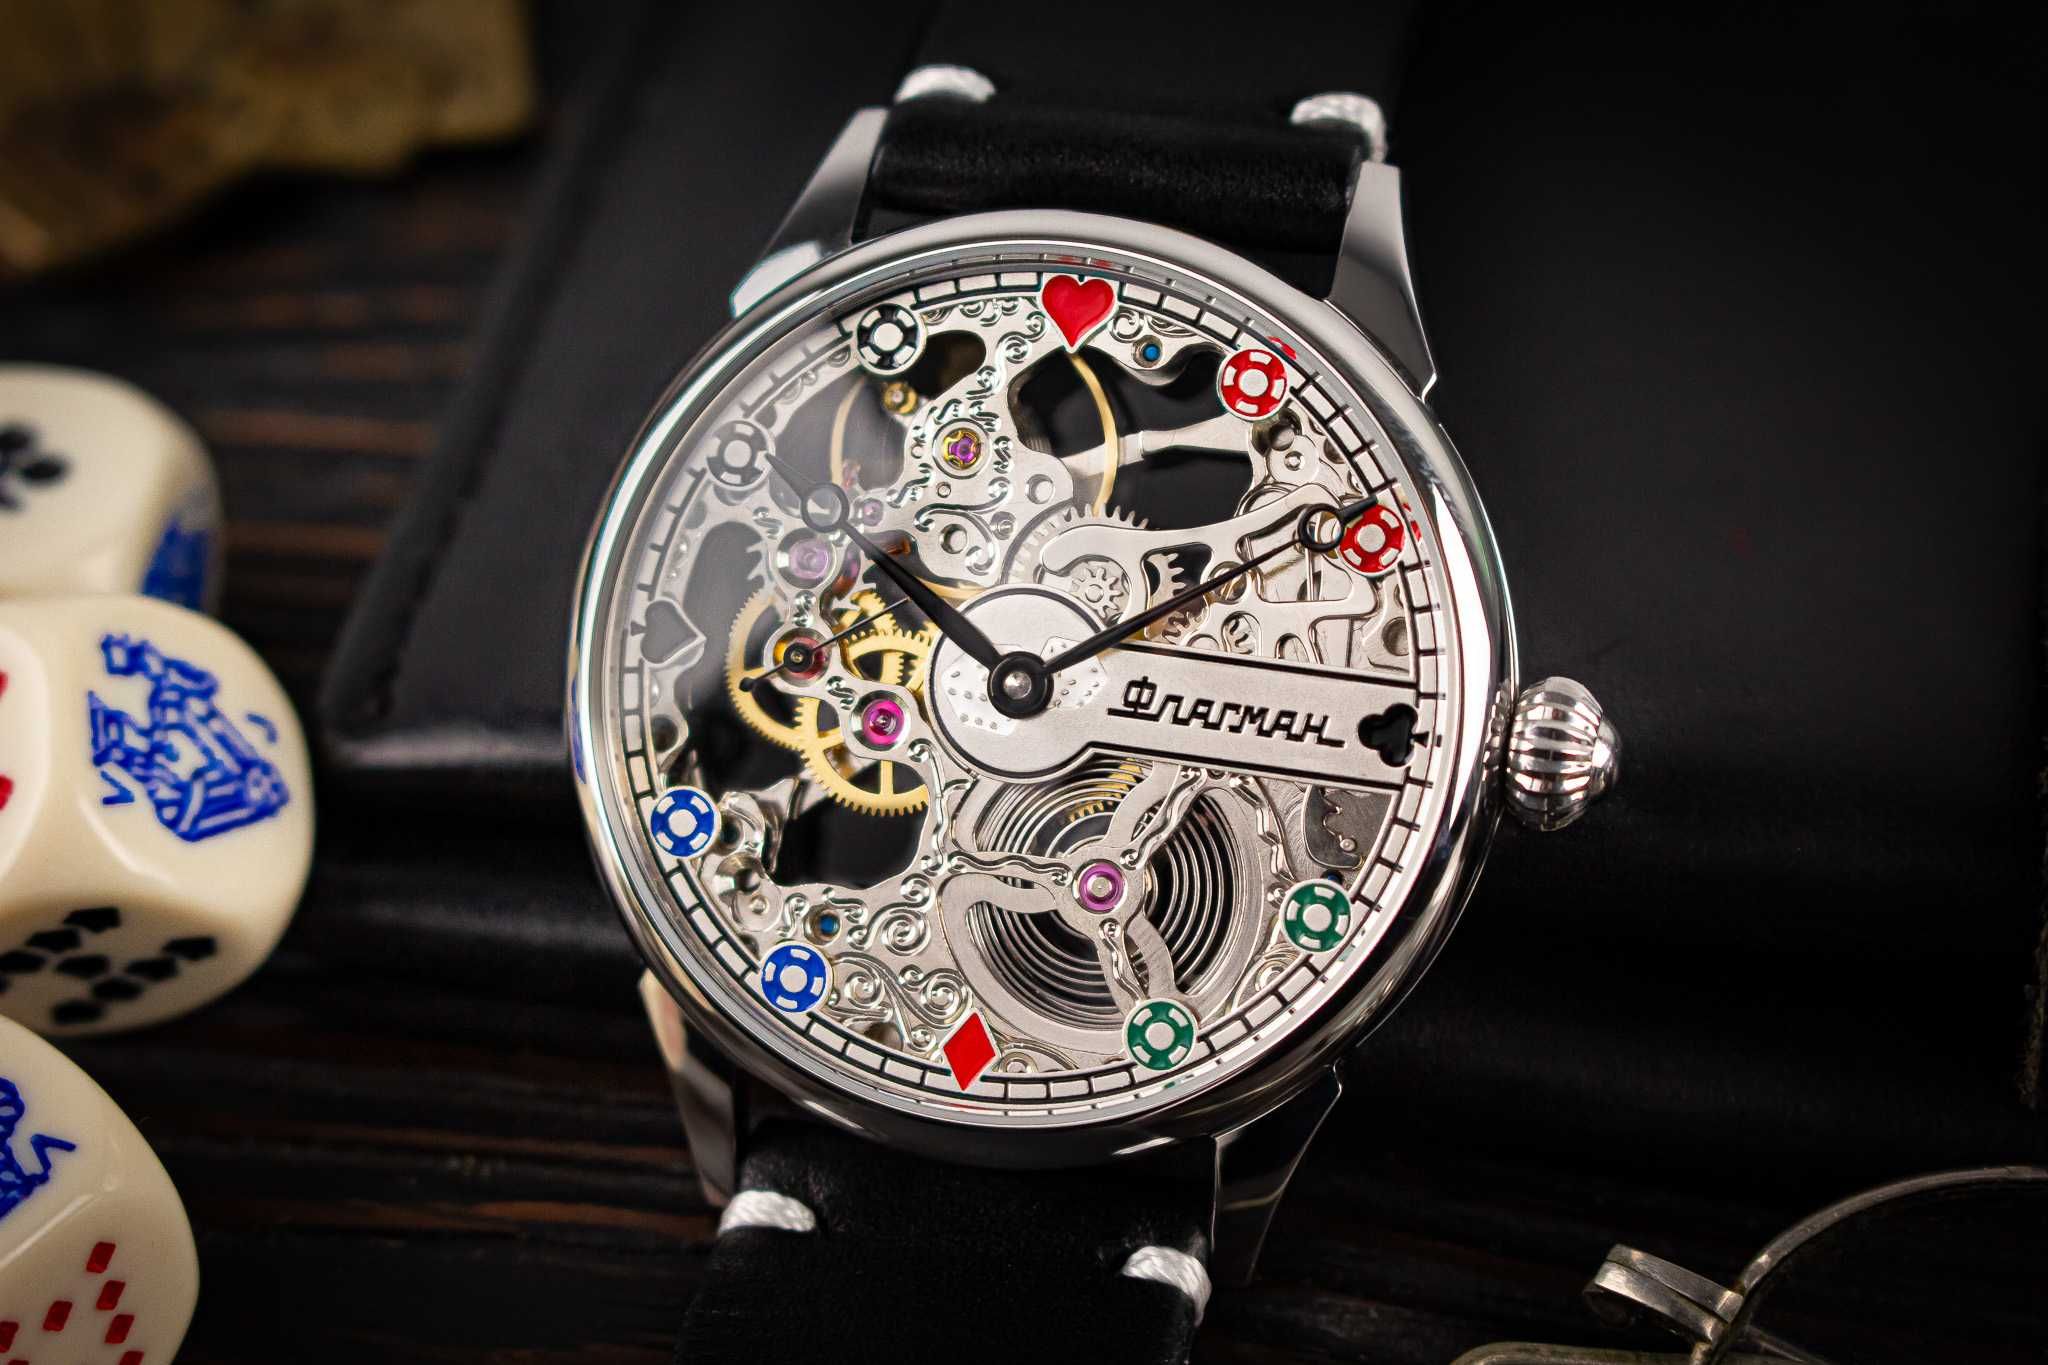 Ексклюзивний наручний механічний годинник скелетон у стилі - Покер